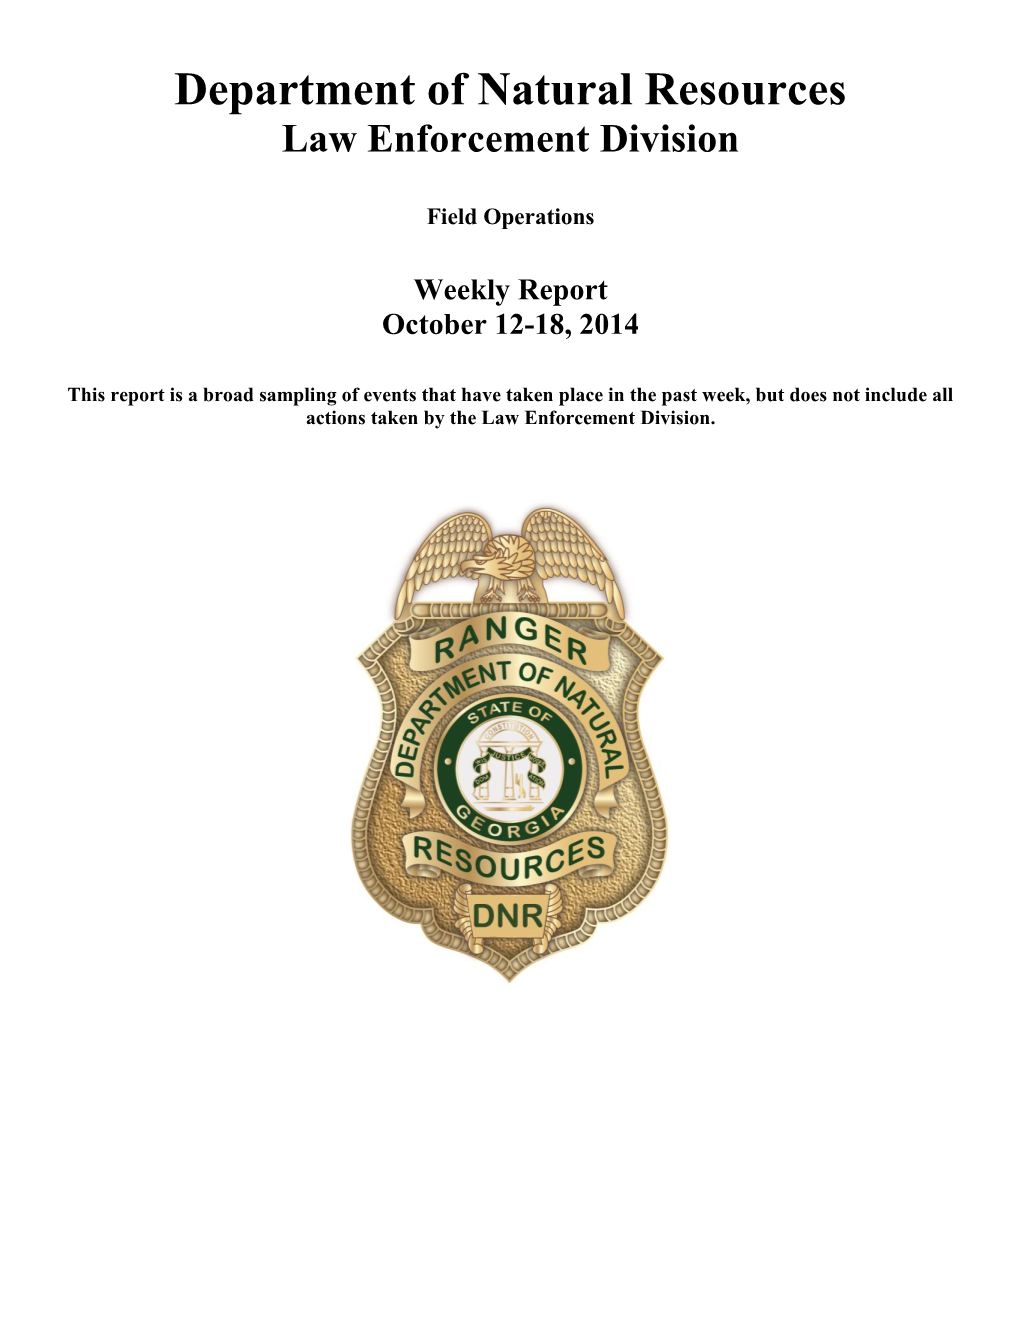 October 12-18, 2014